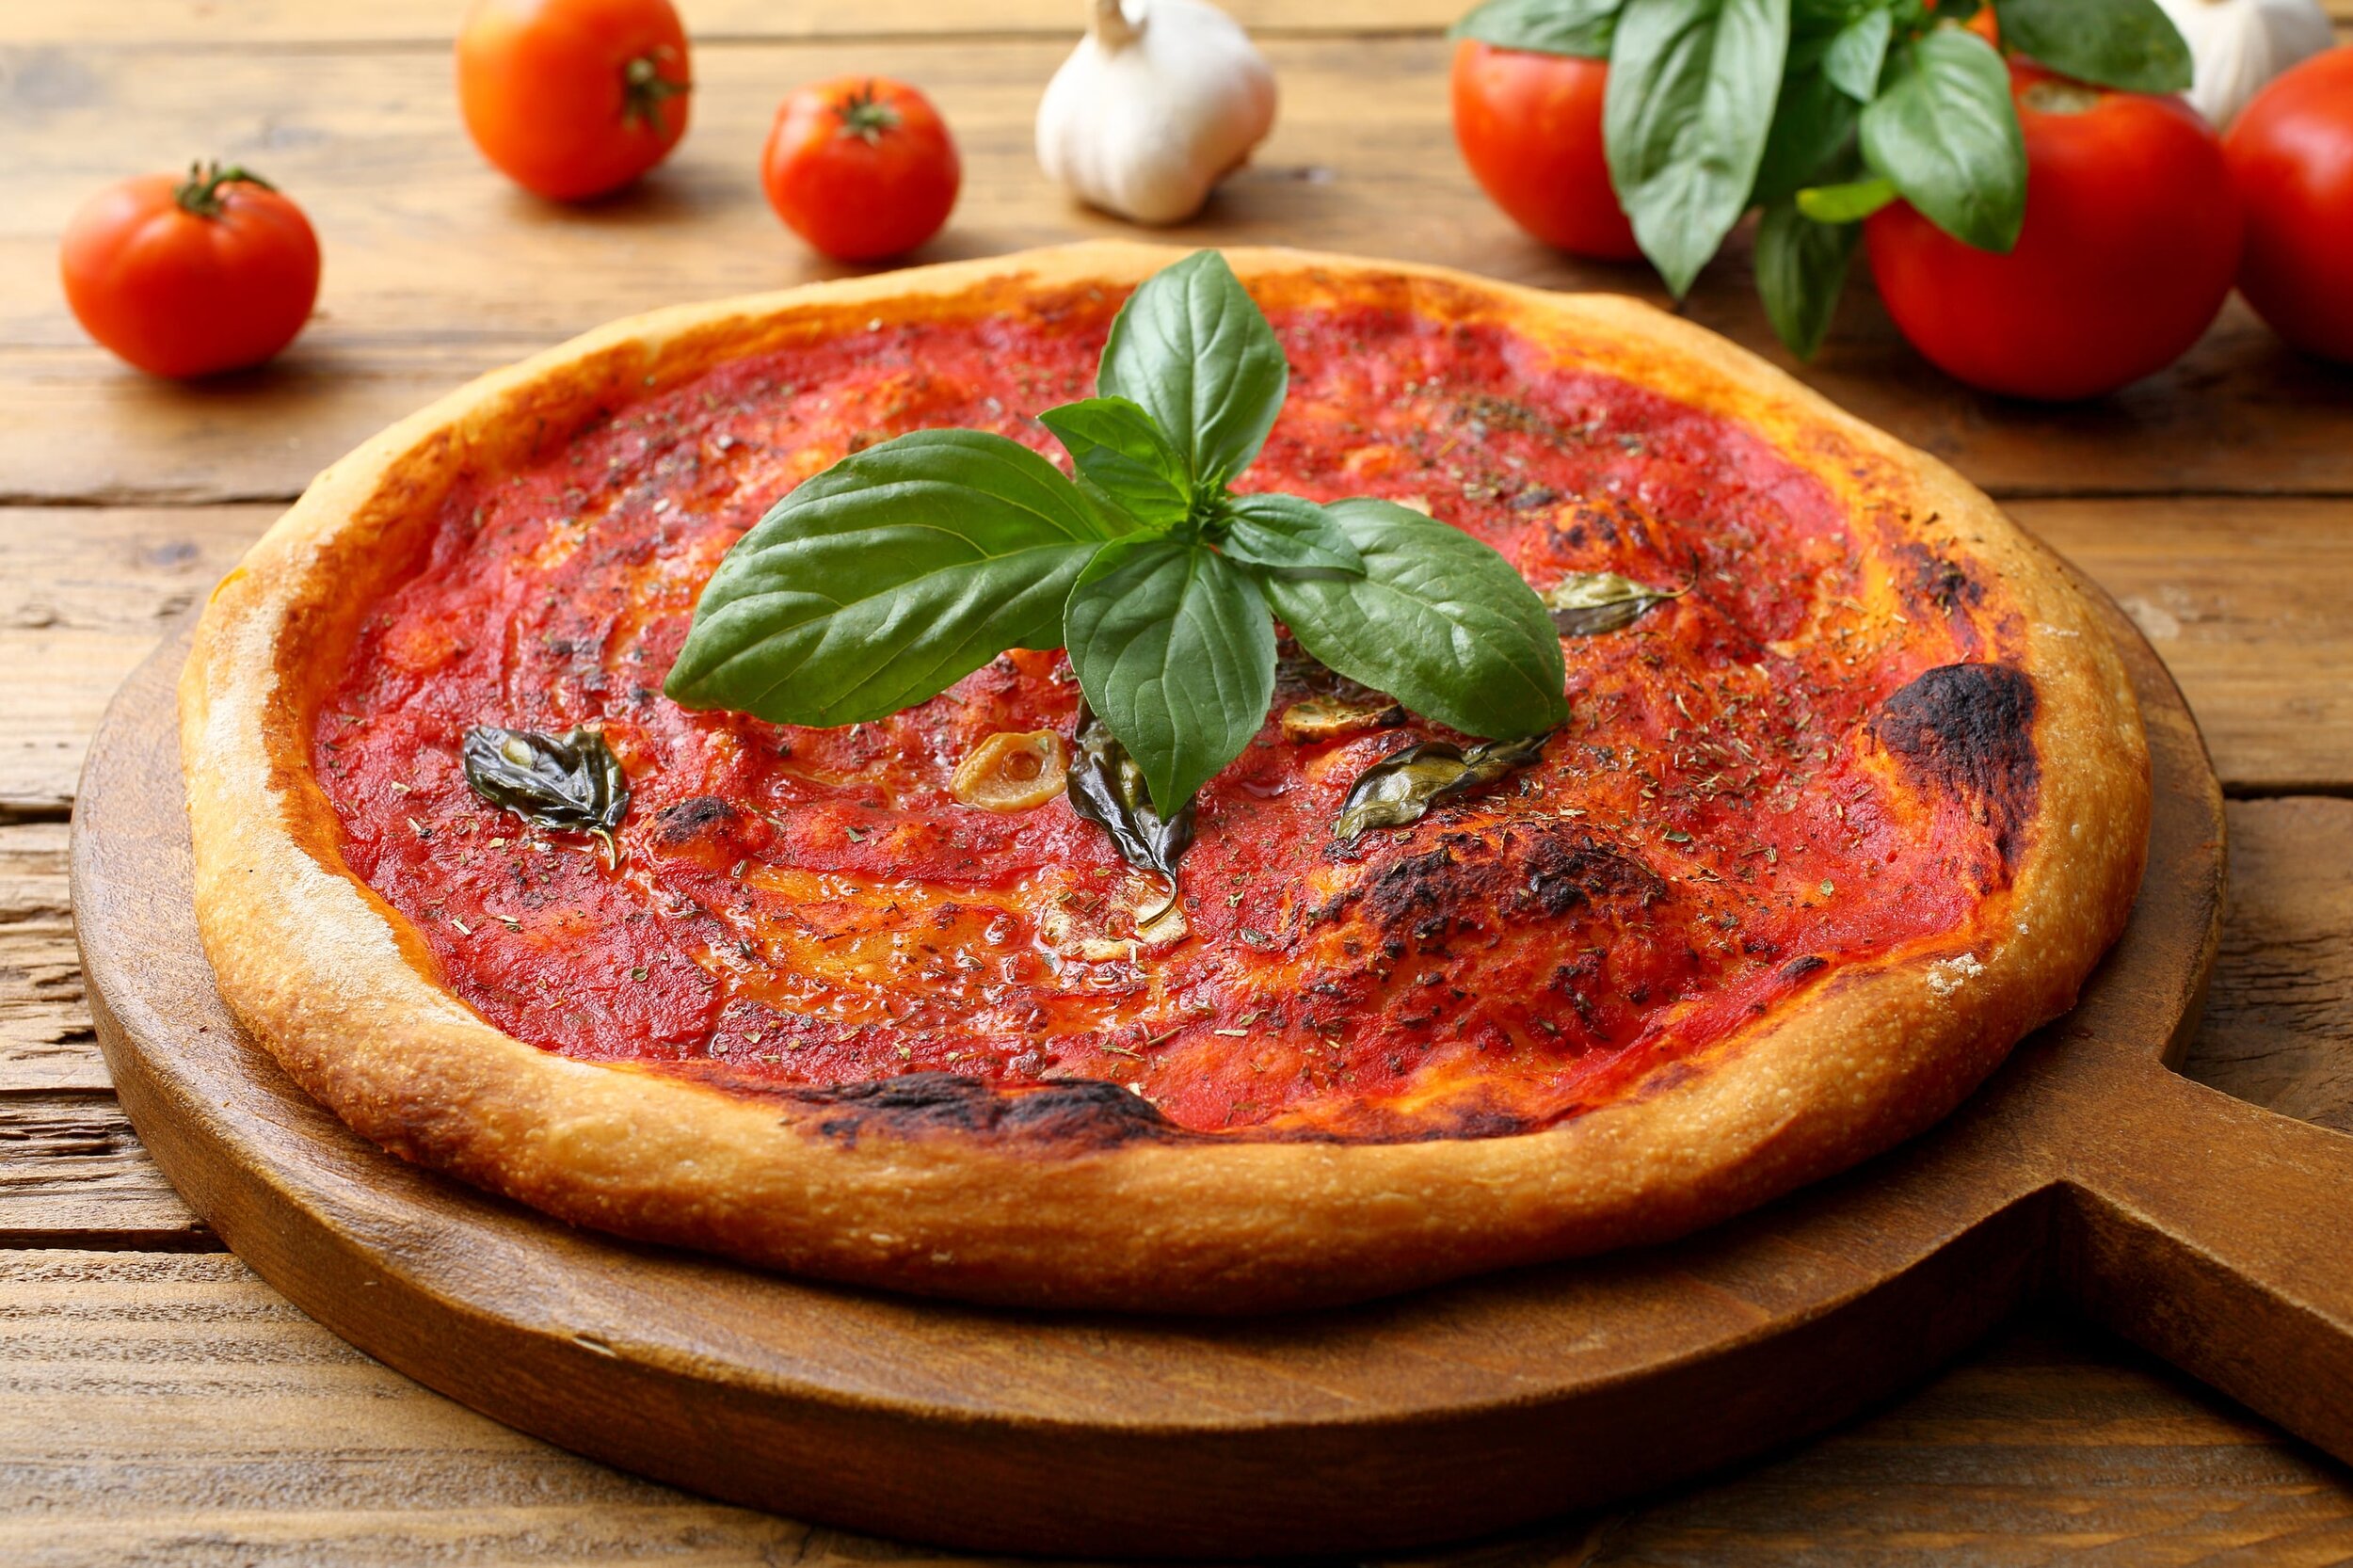 Pizza Marinara has always been vegan pizza